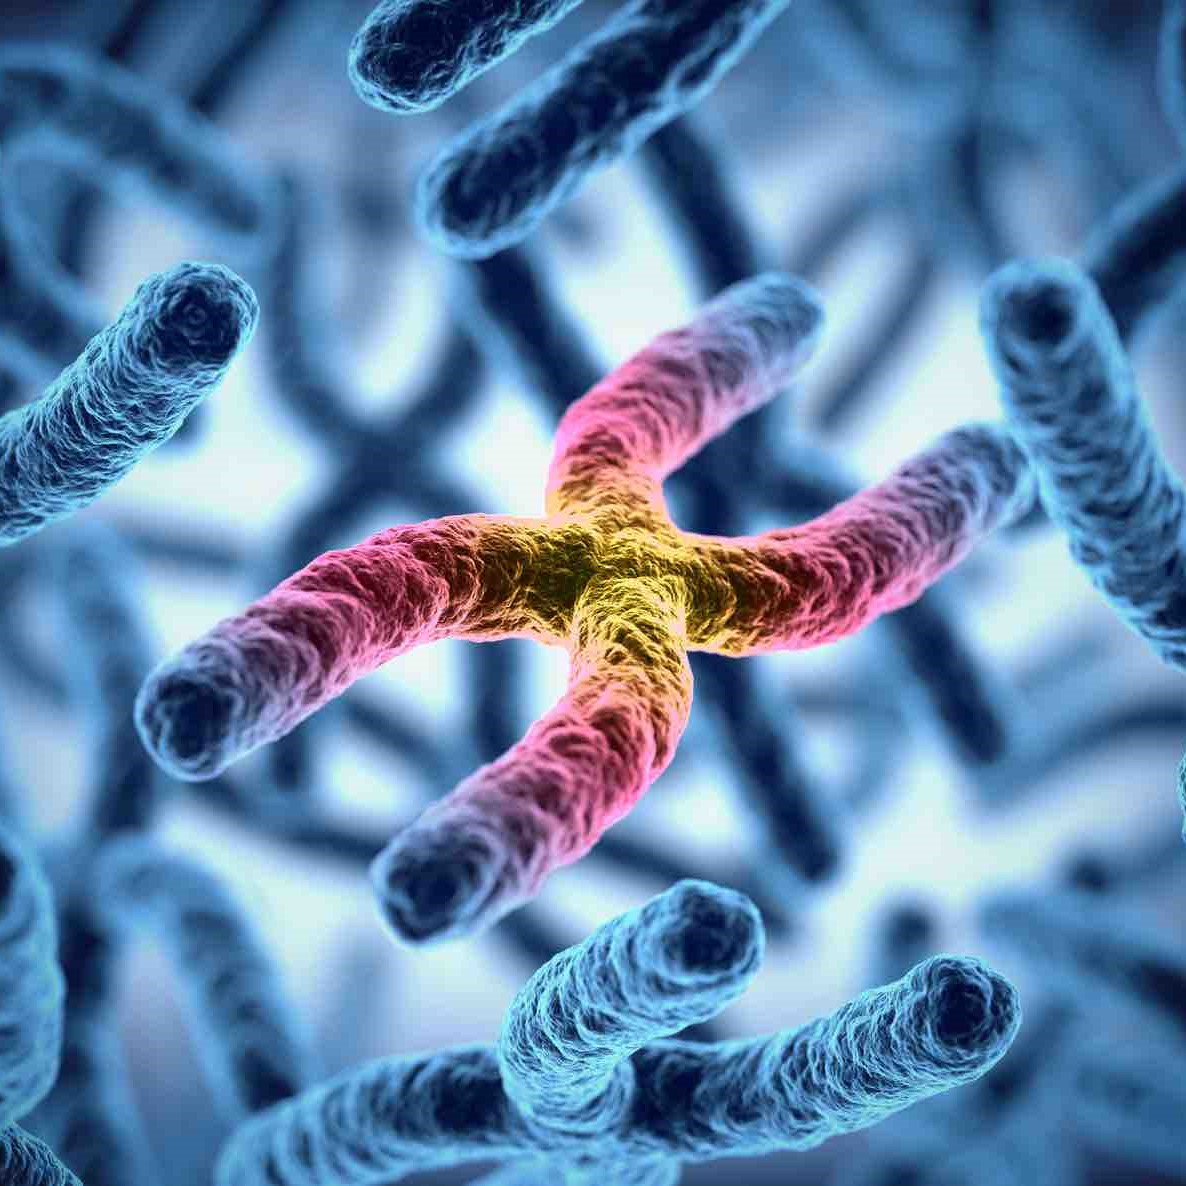 image of chromosomes